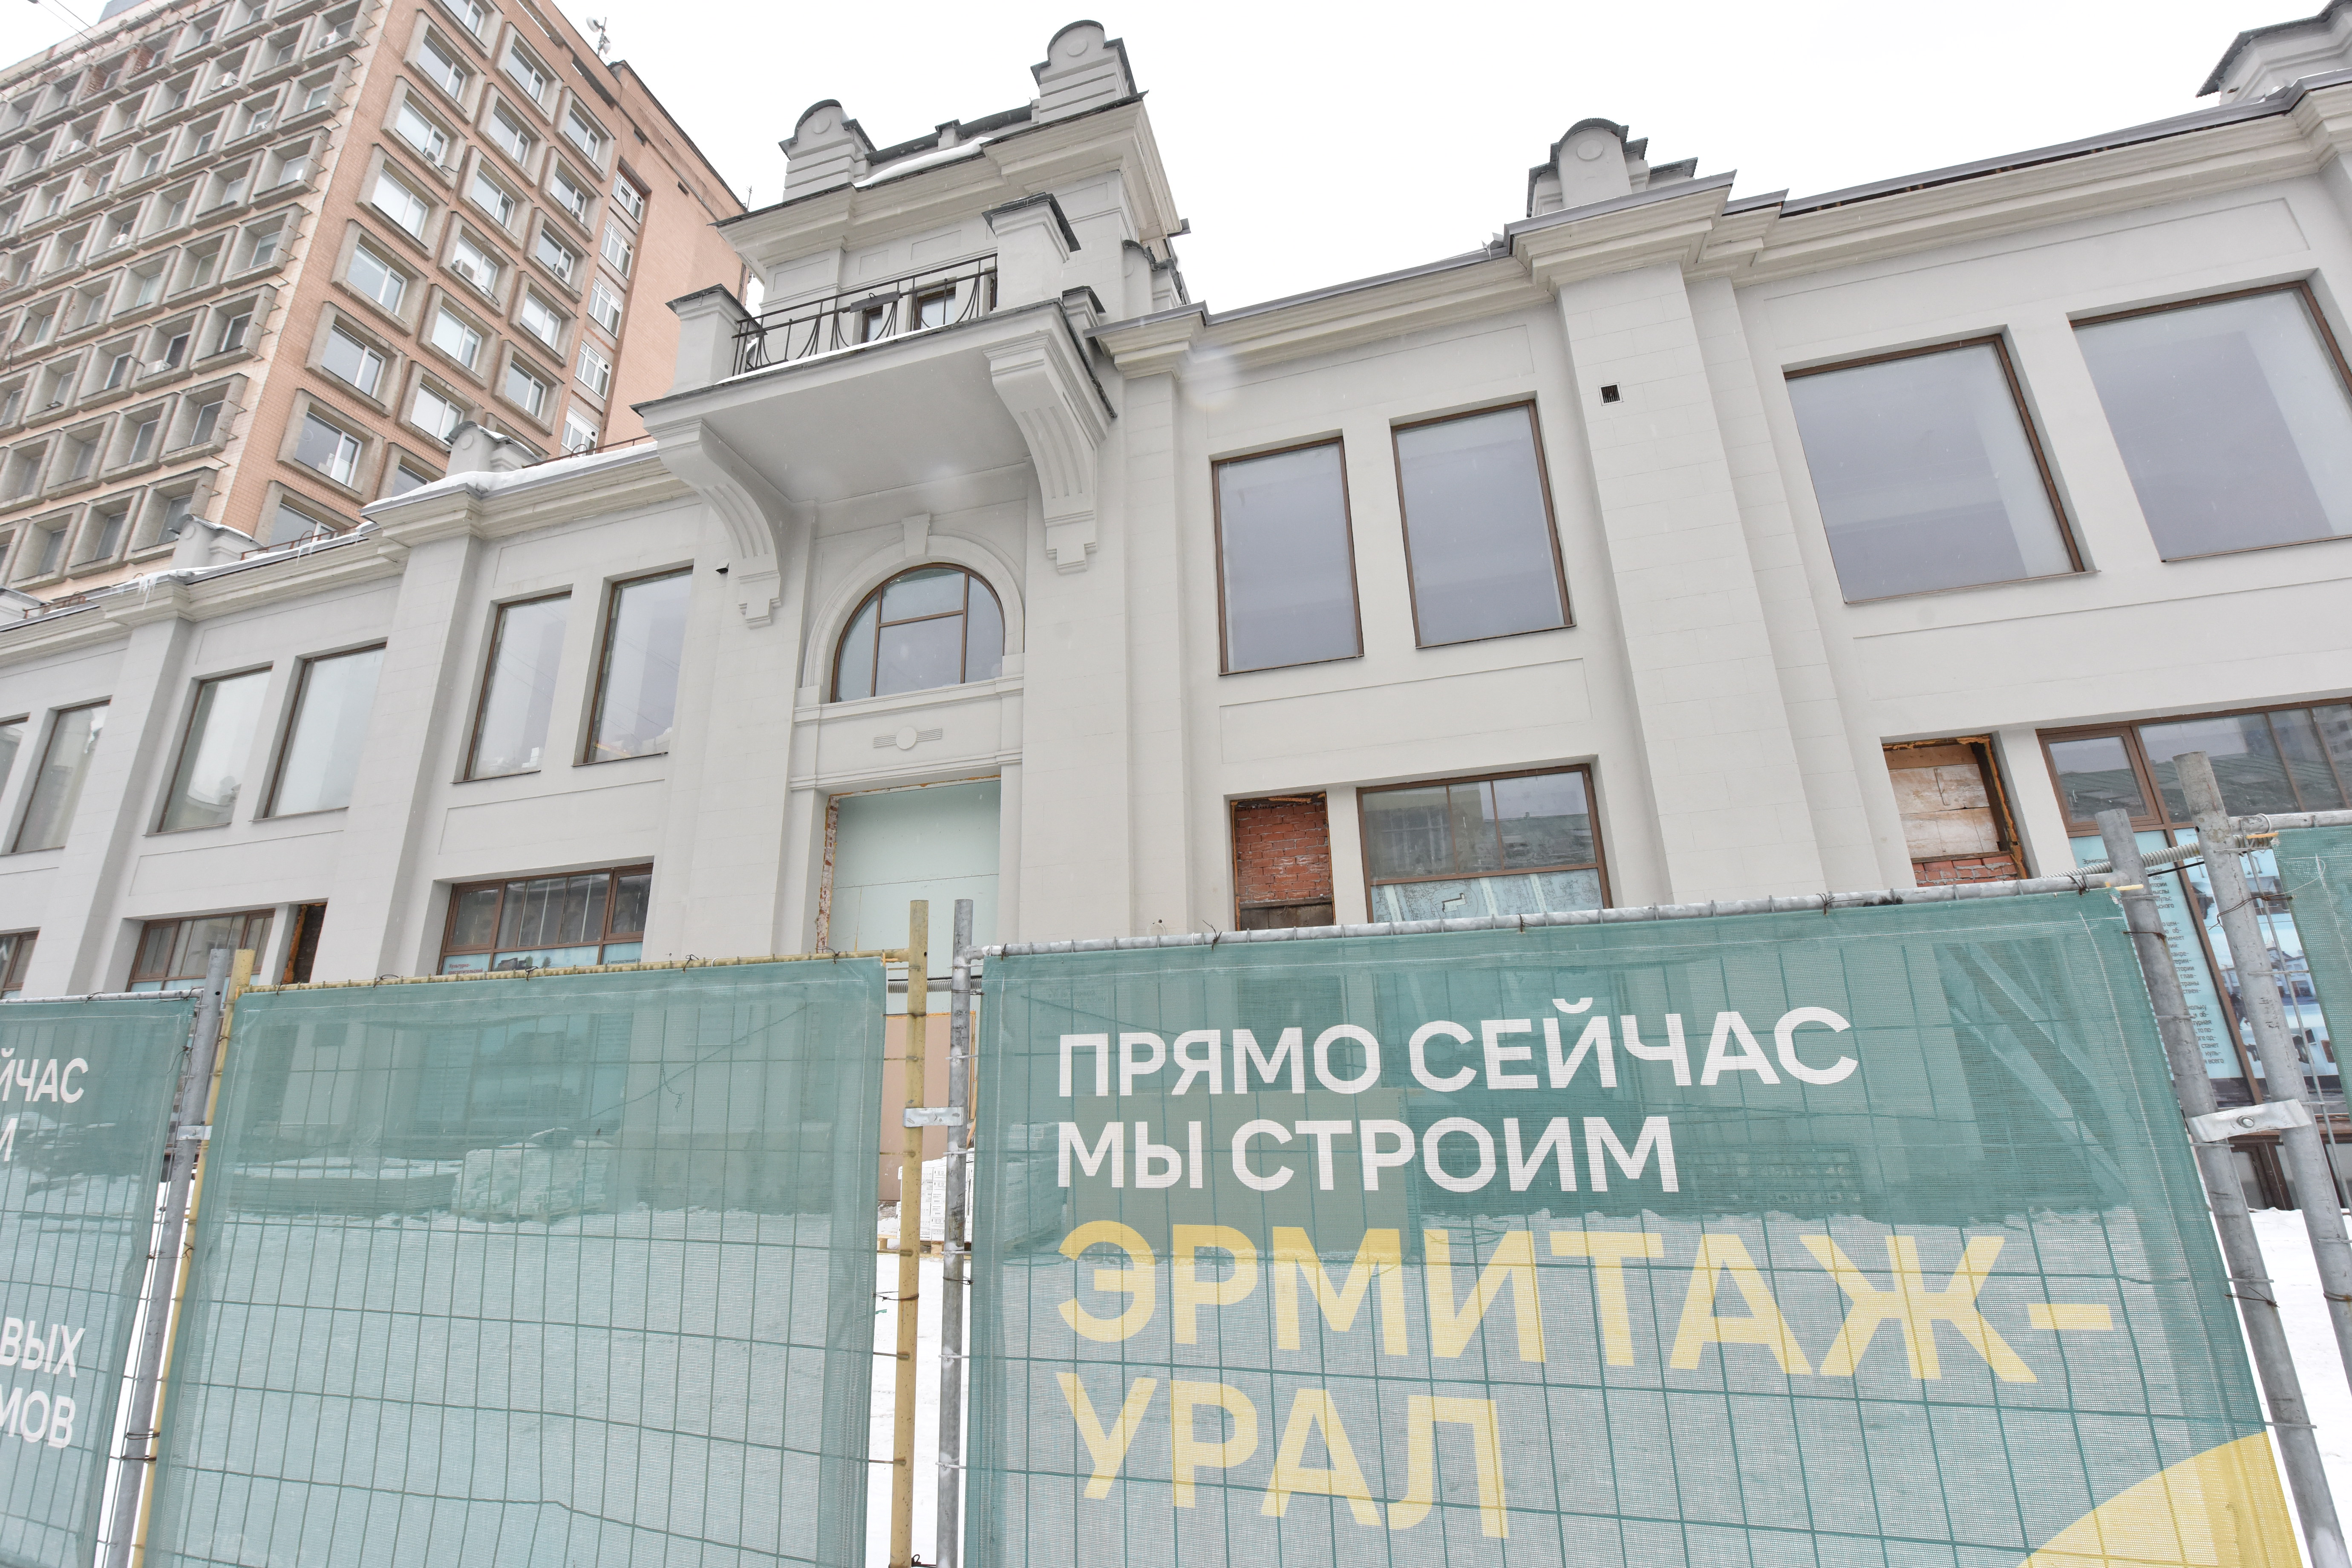 В Екатеринбурге дан старт работе центра «Эрмитаж-Урал»